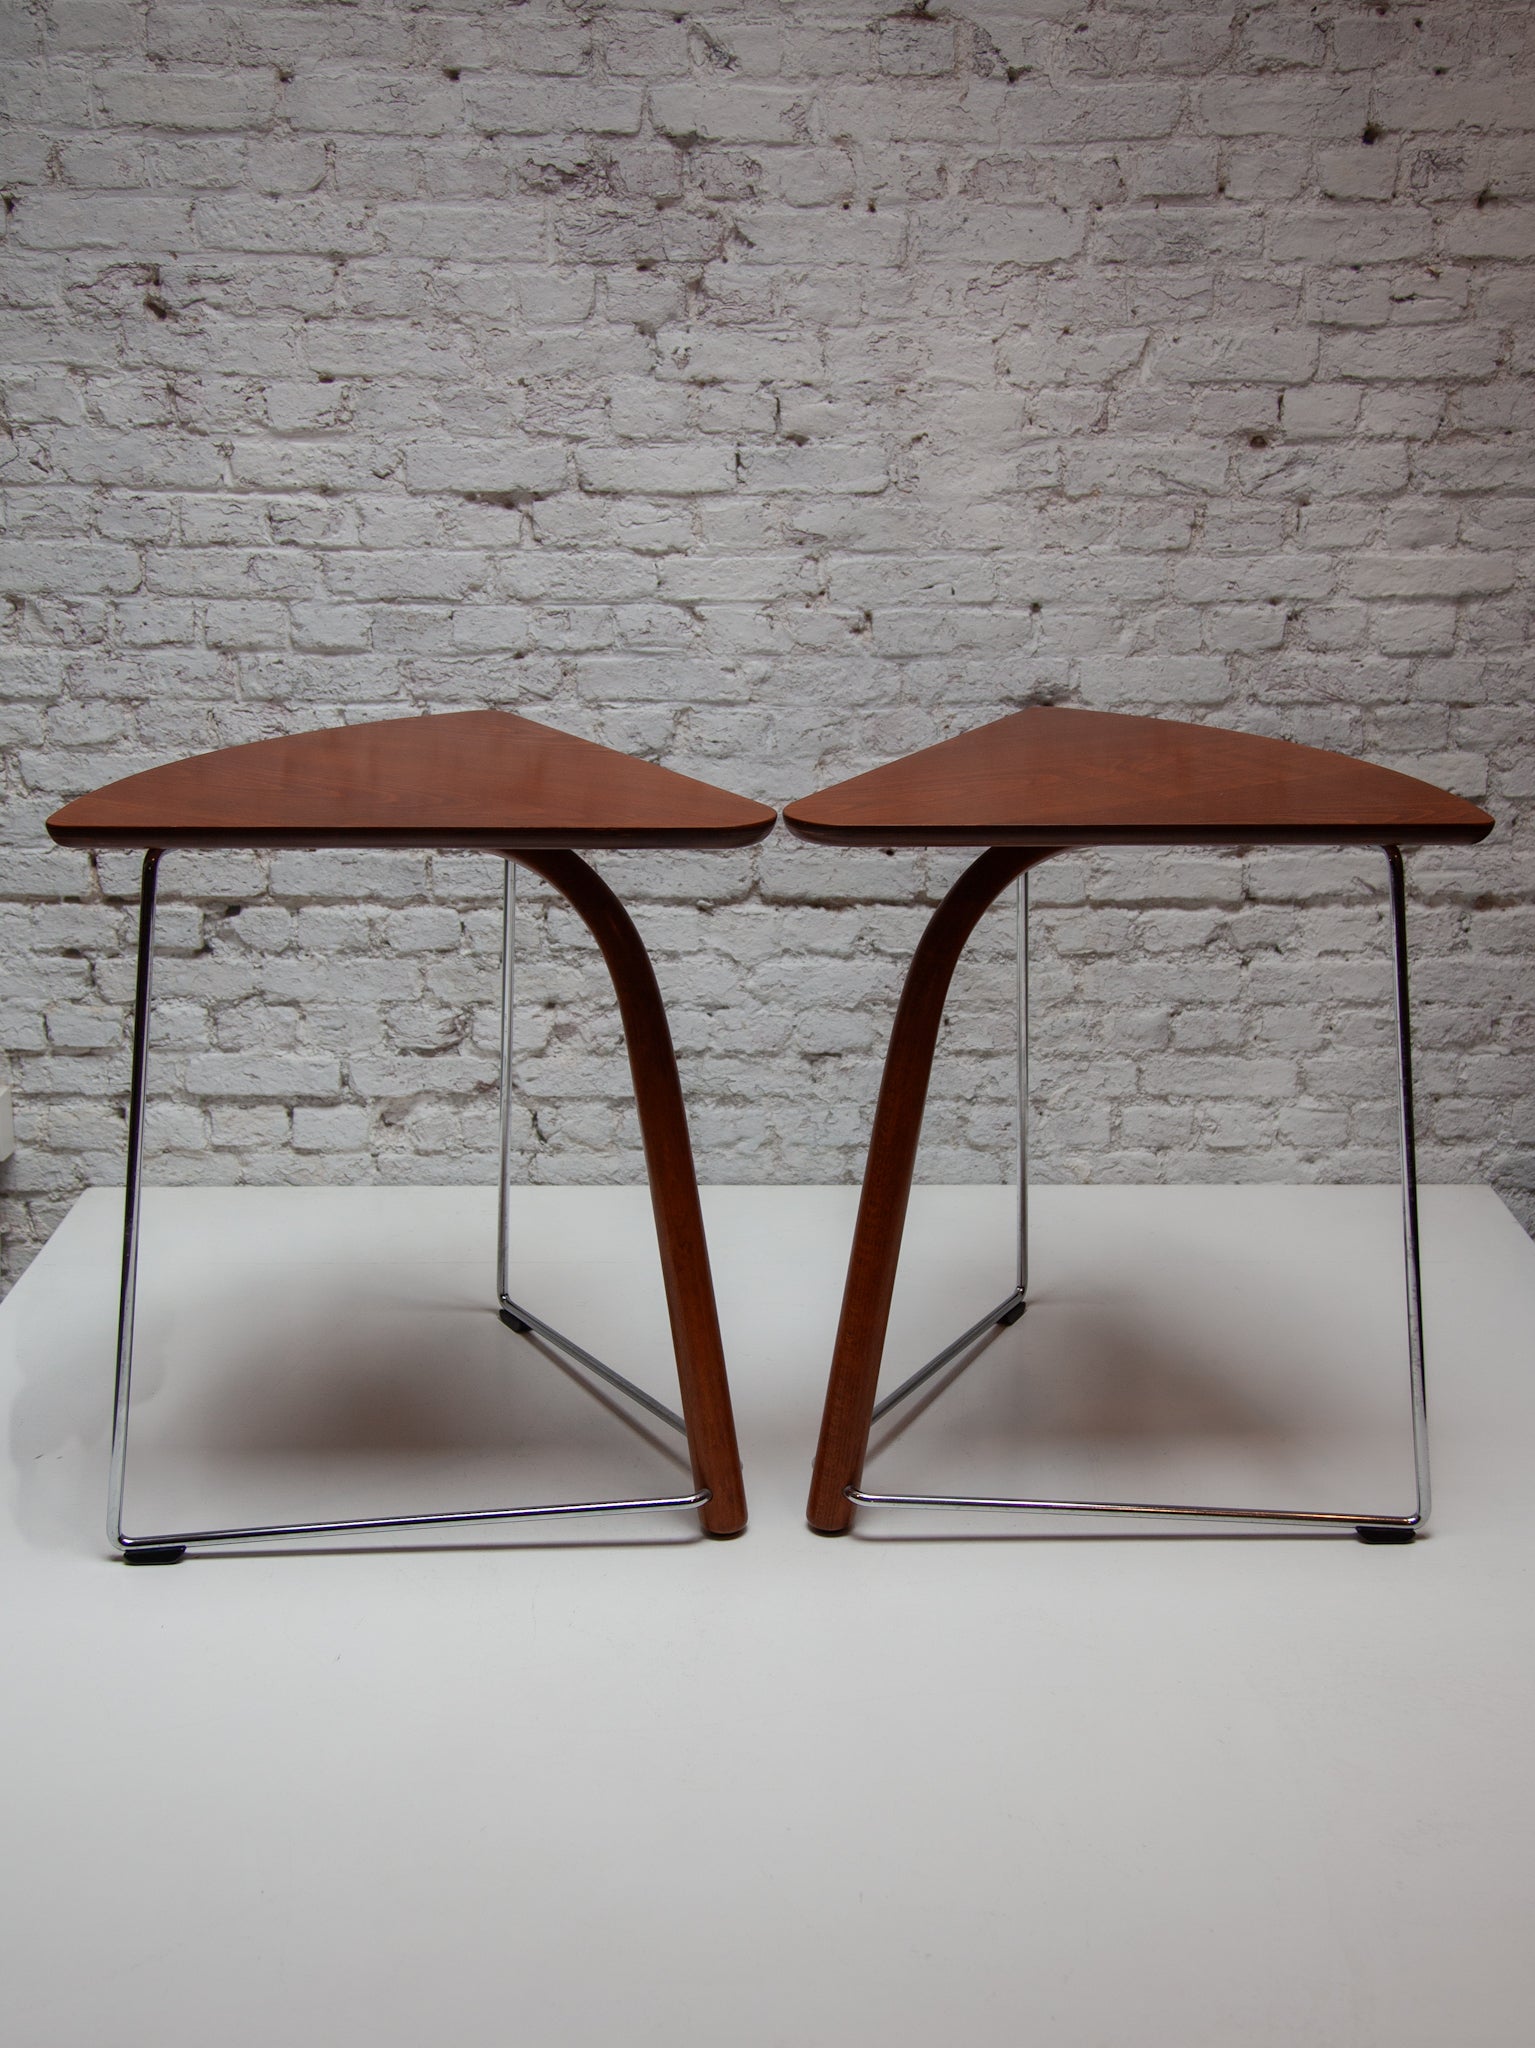 Ensemble de deux tables d'appoint Thonet conçues par Wulf Schneider et Ulrich Böhme pour accompagner leur chaise S320. Le pied avant en bois courbé à la vapeur, inspiré de la longue tradition de Thonet en matière de meubles courbés à la vapeur, est